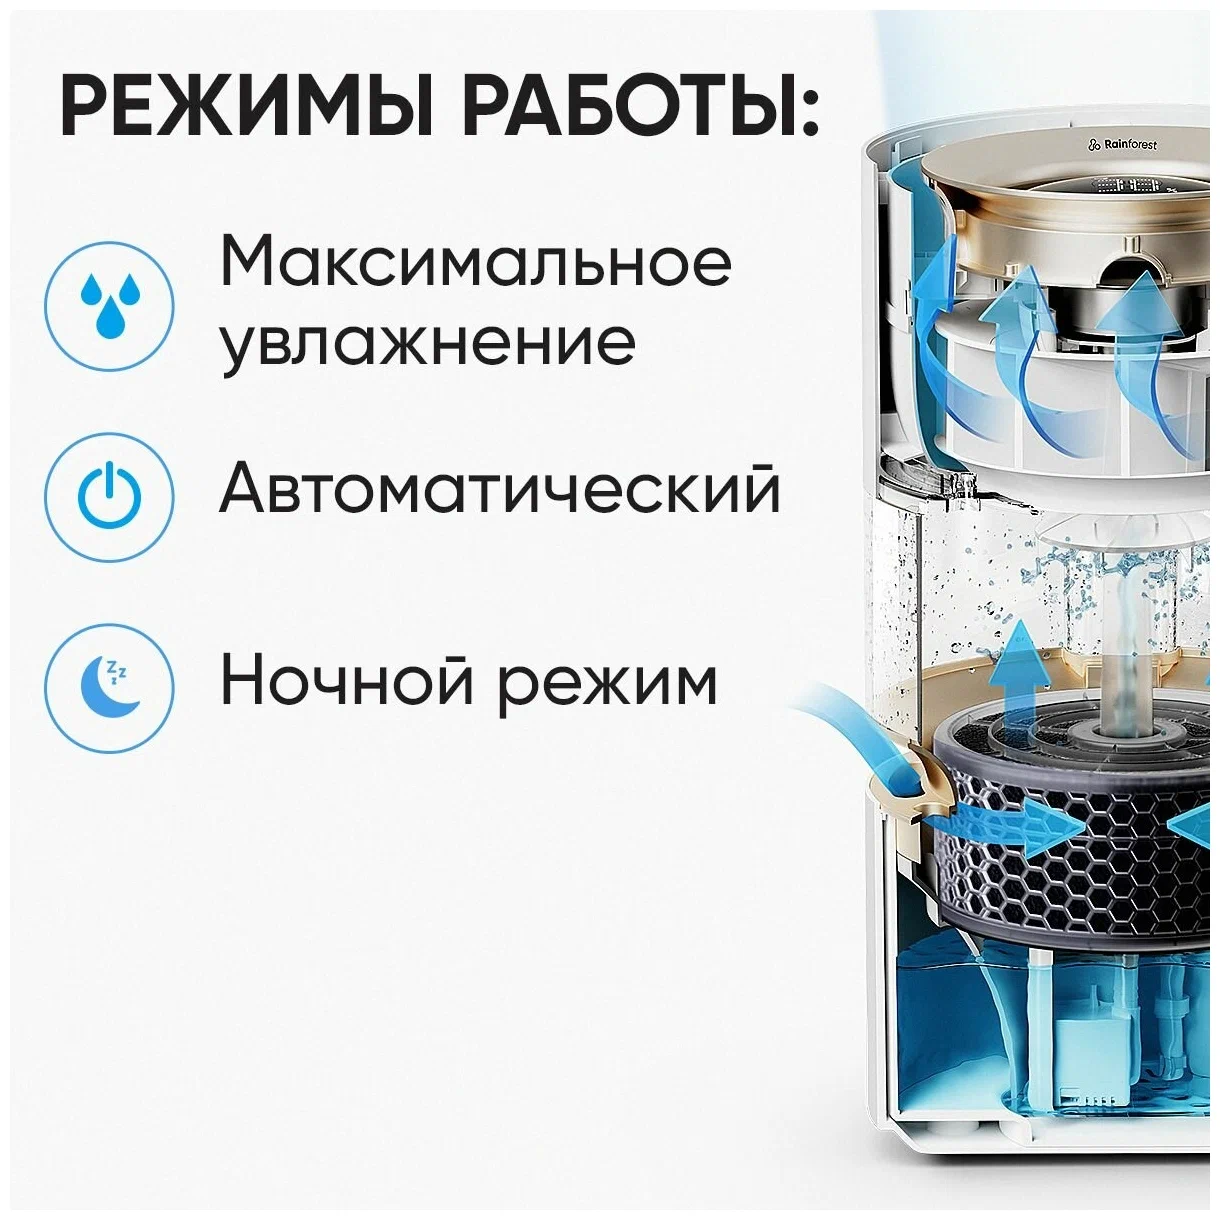 Увлажнитель воздуха Smartmi Humidifier Rainforest (CJJSQ06ZM) в Челябинске купить по недорогим ценам с доставкой